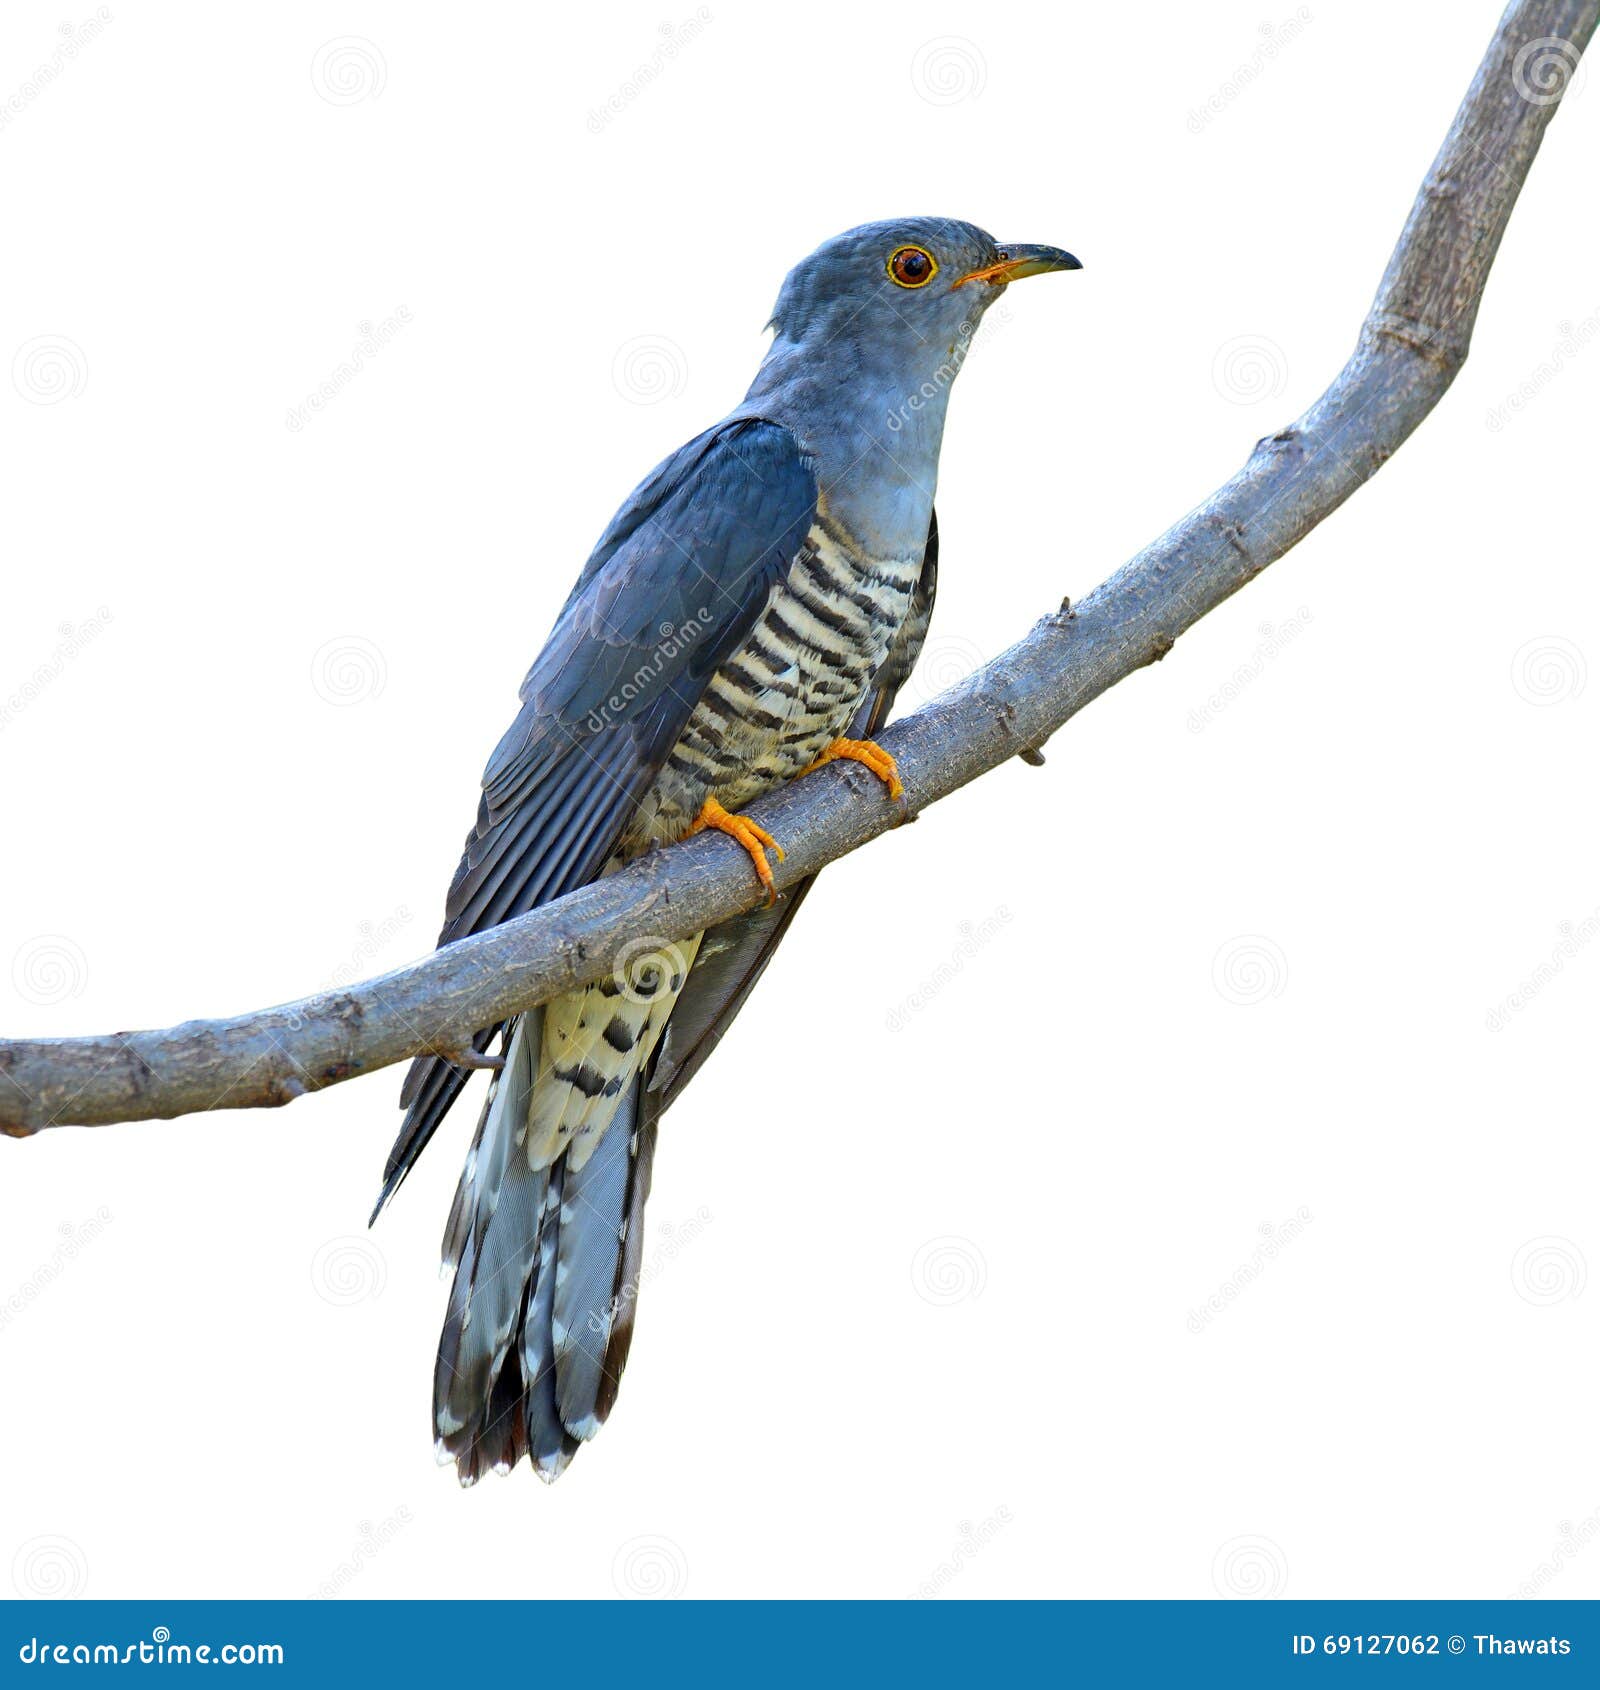 himalayan cuckoo bird